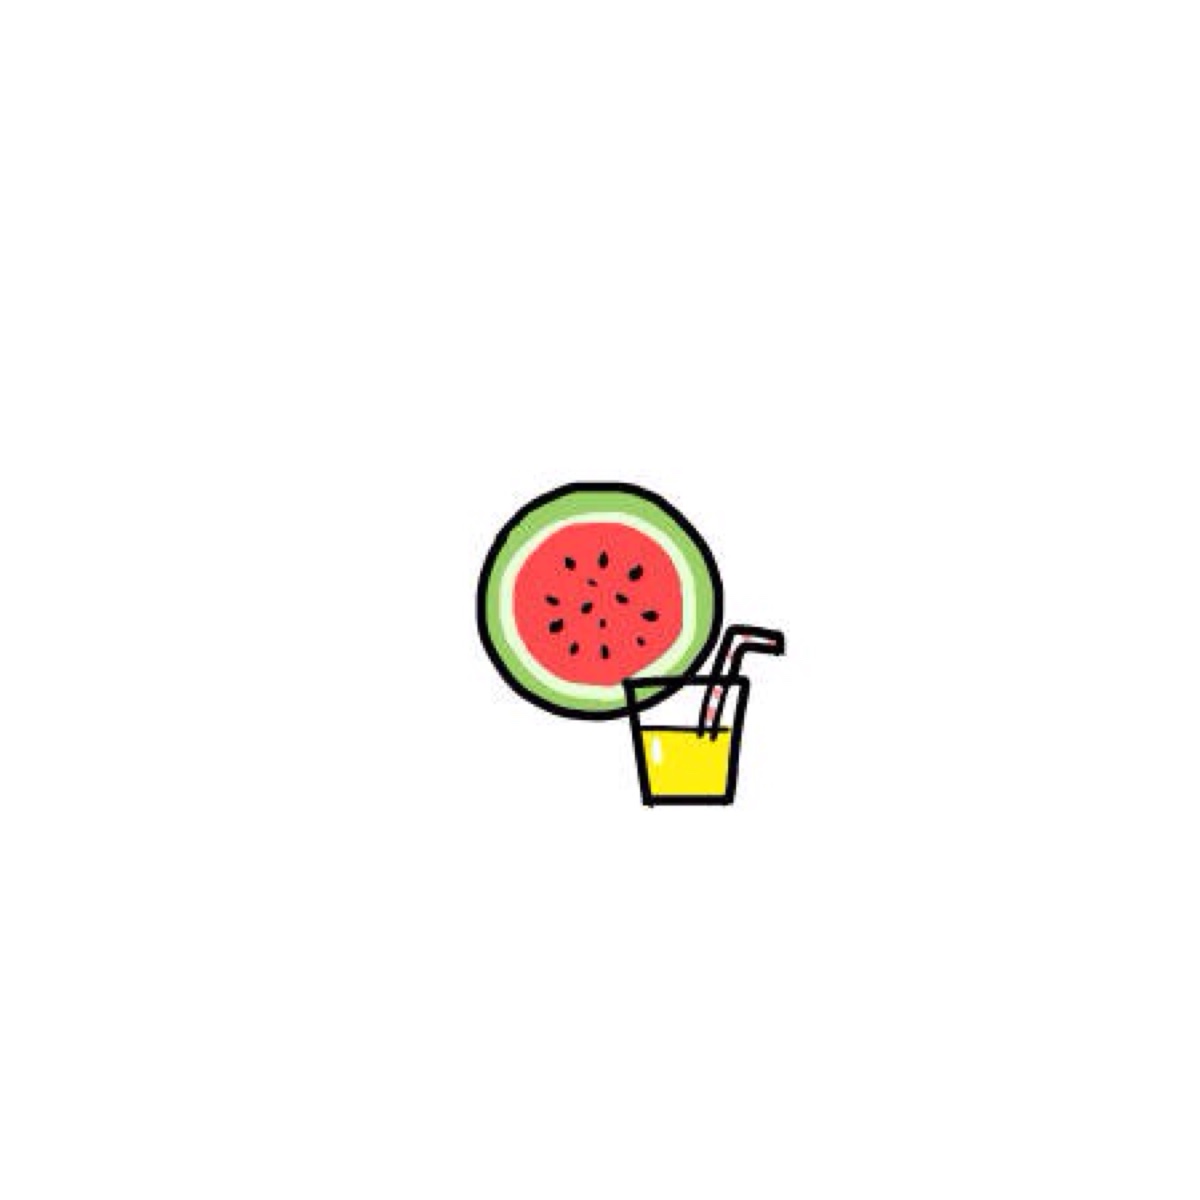 画了一批西瓜系列小头像!你们最喜欢怎么吃?[馋嘴]